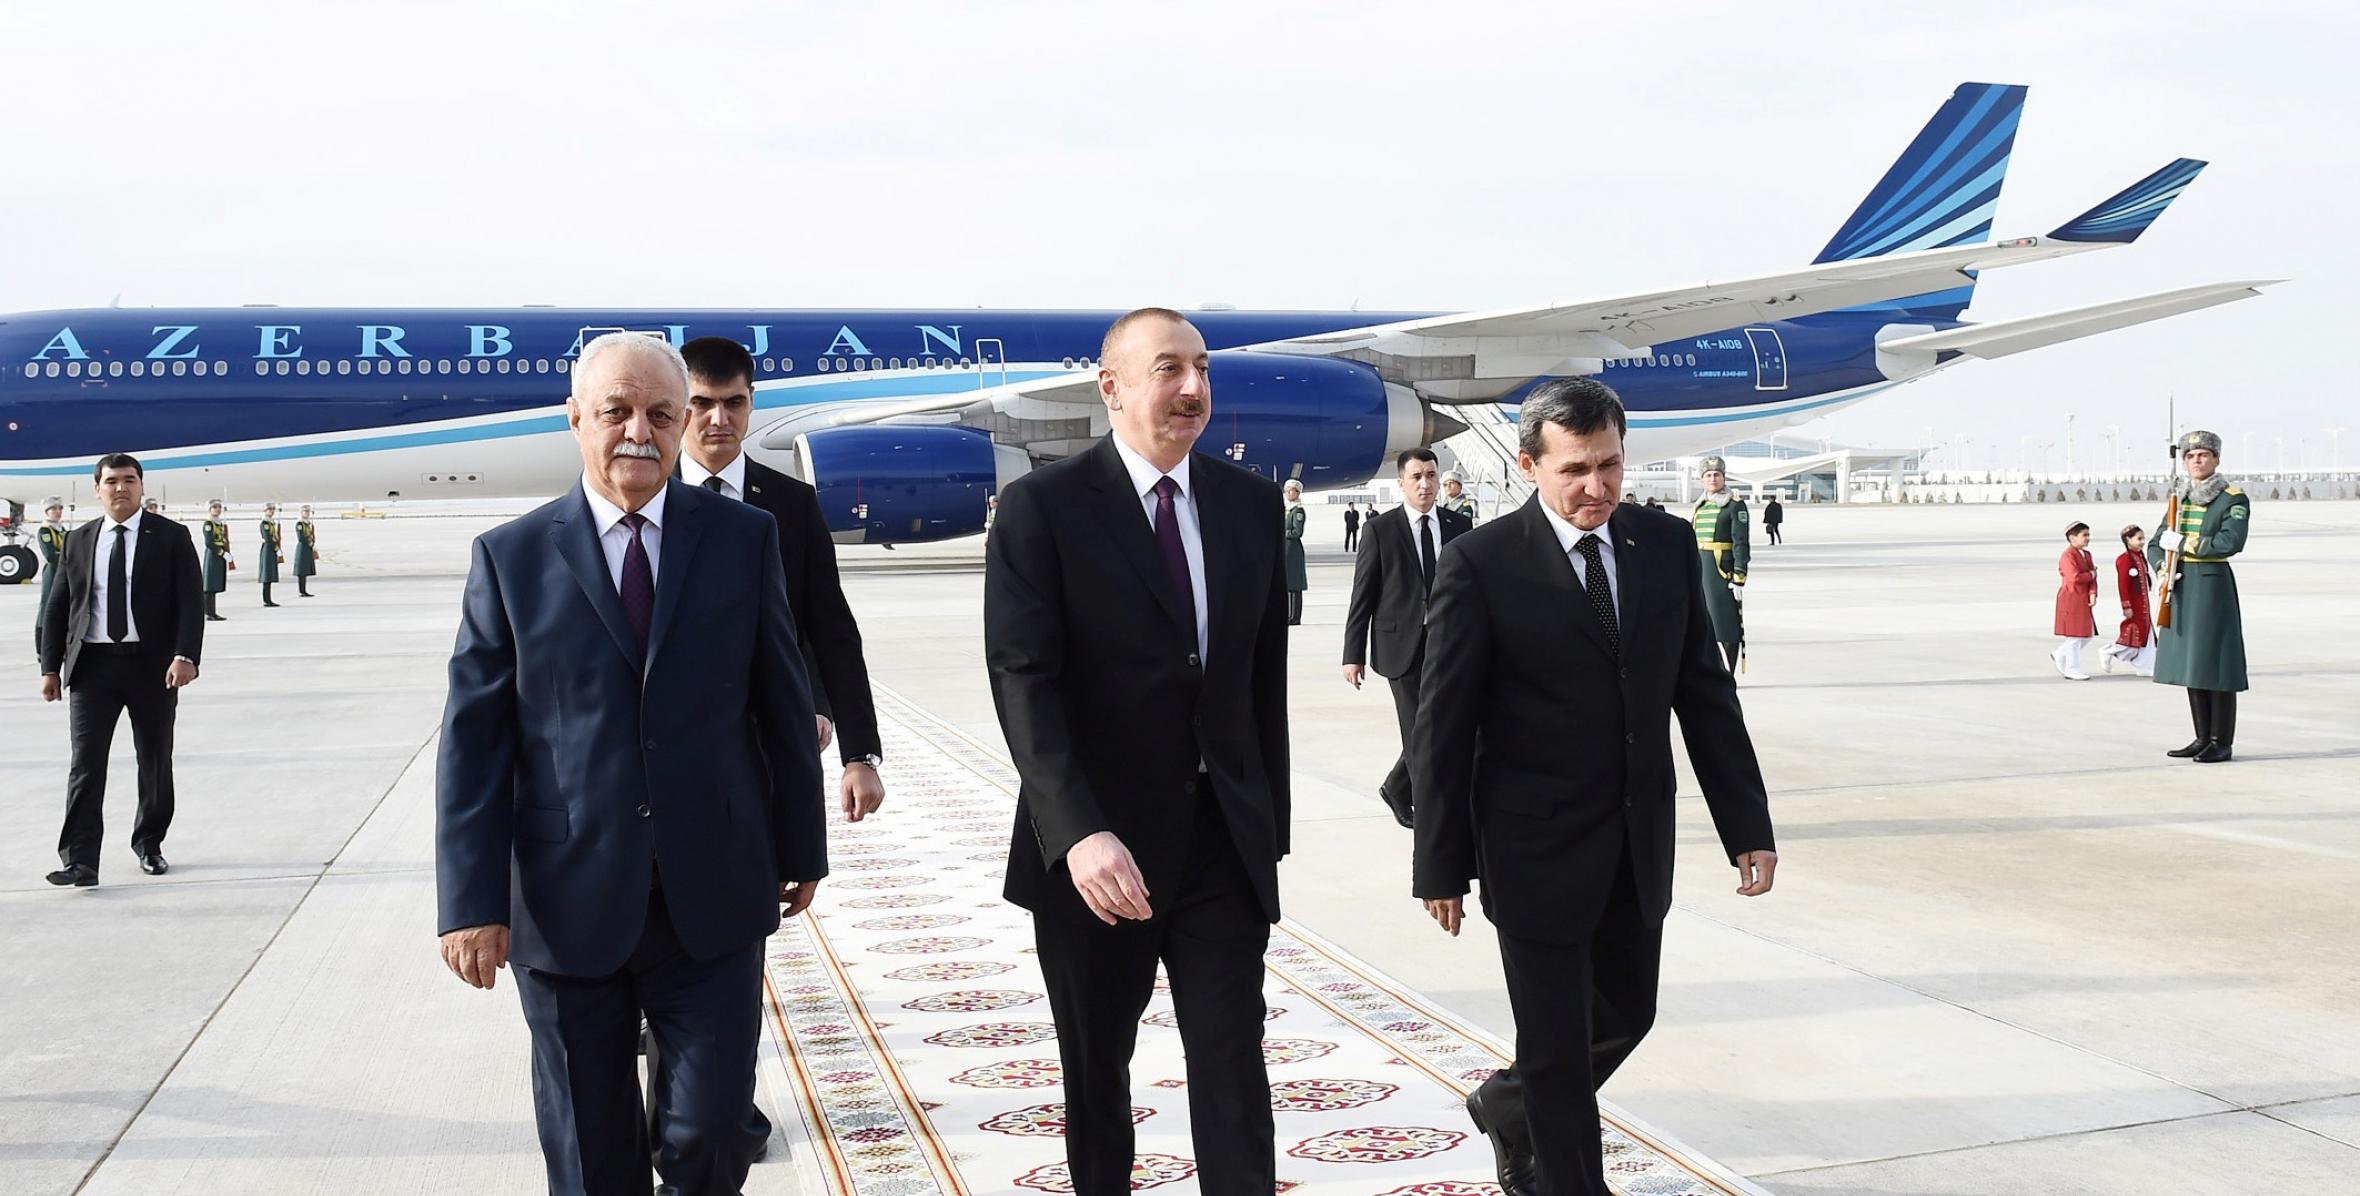 Ilham Aliyev arrived in Turkmenistan for official visit